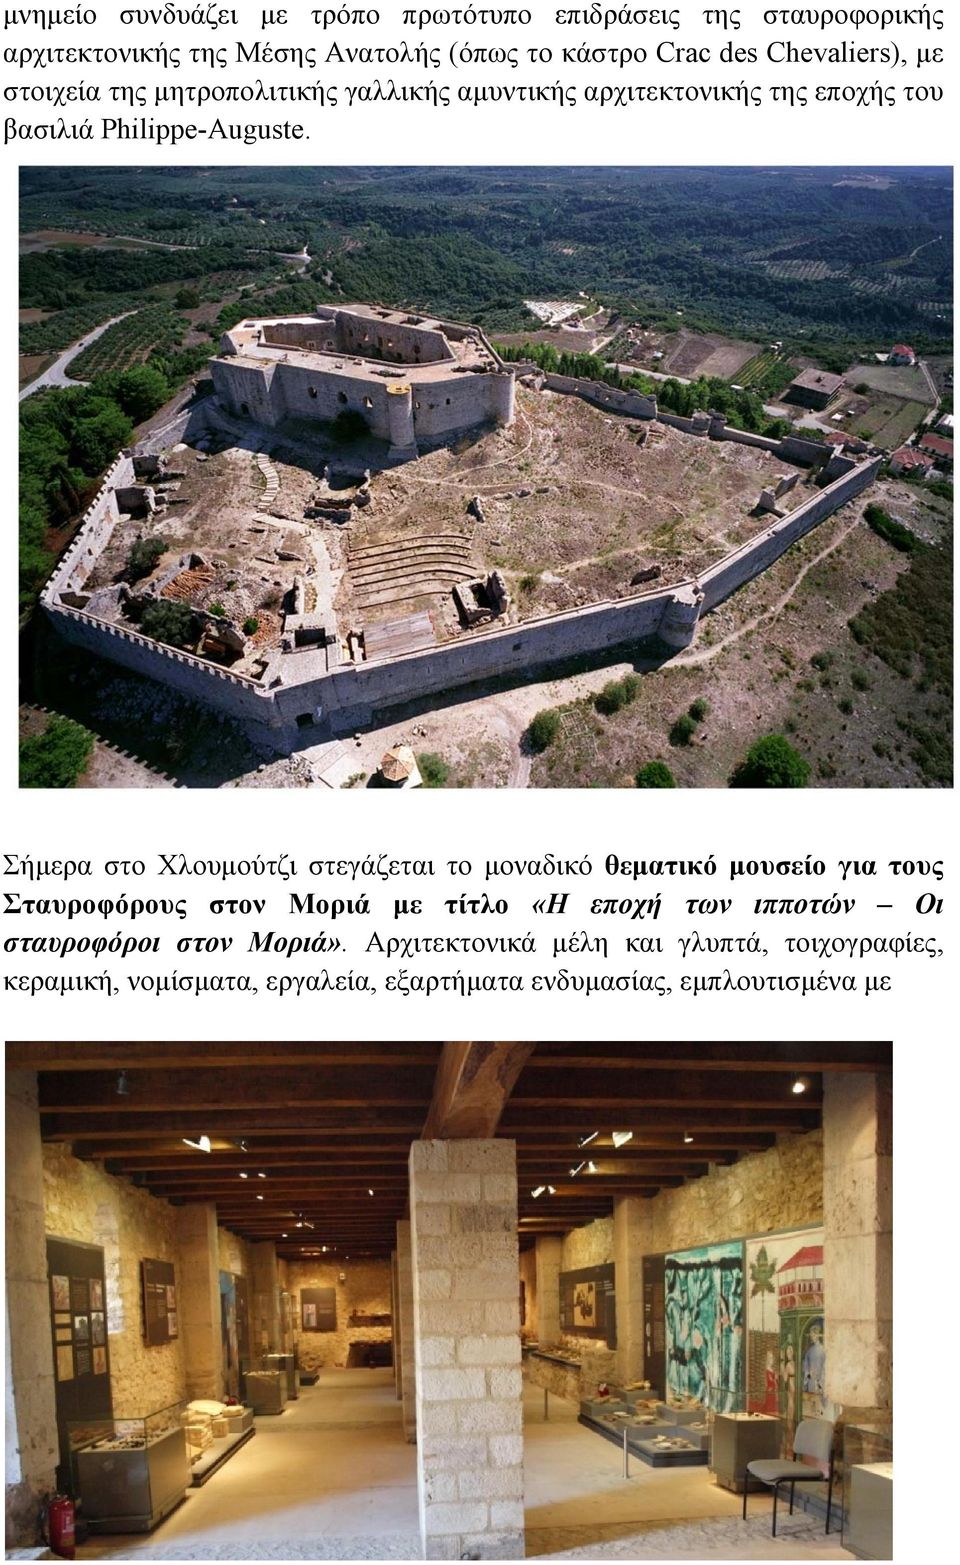 Σήμερα στο Χλουμούτζι στεγάζεται το μοναδικό θεματικό μουσείο για τους Σταυροφόρους στον Μοριά με τίτλο «Η εποχή των ιπποτών Οι